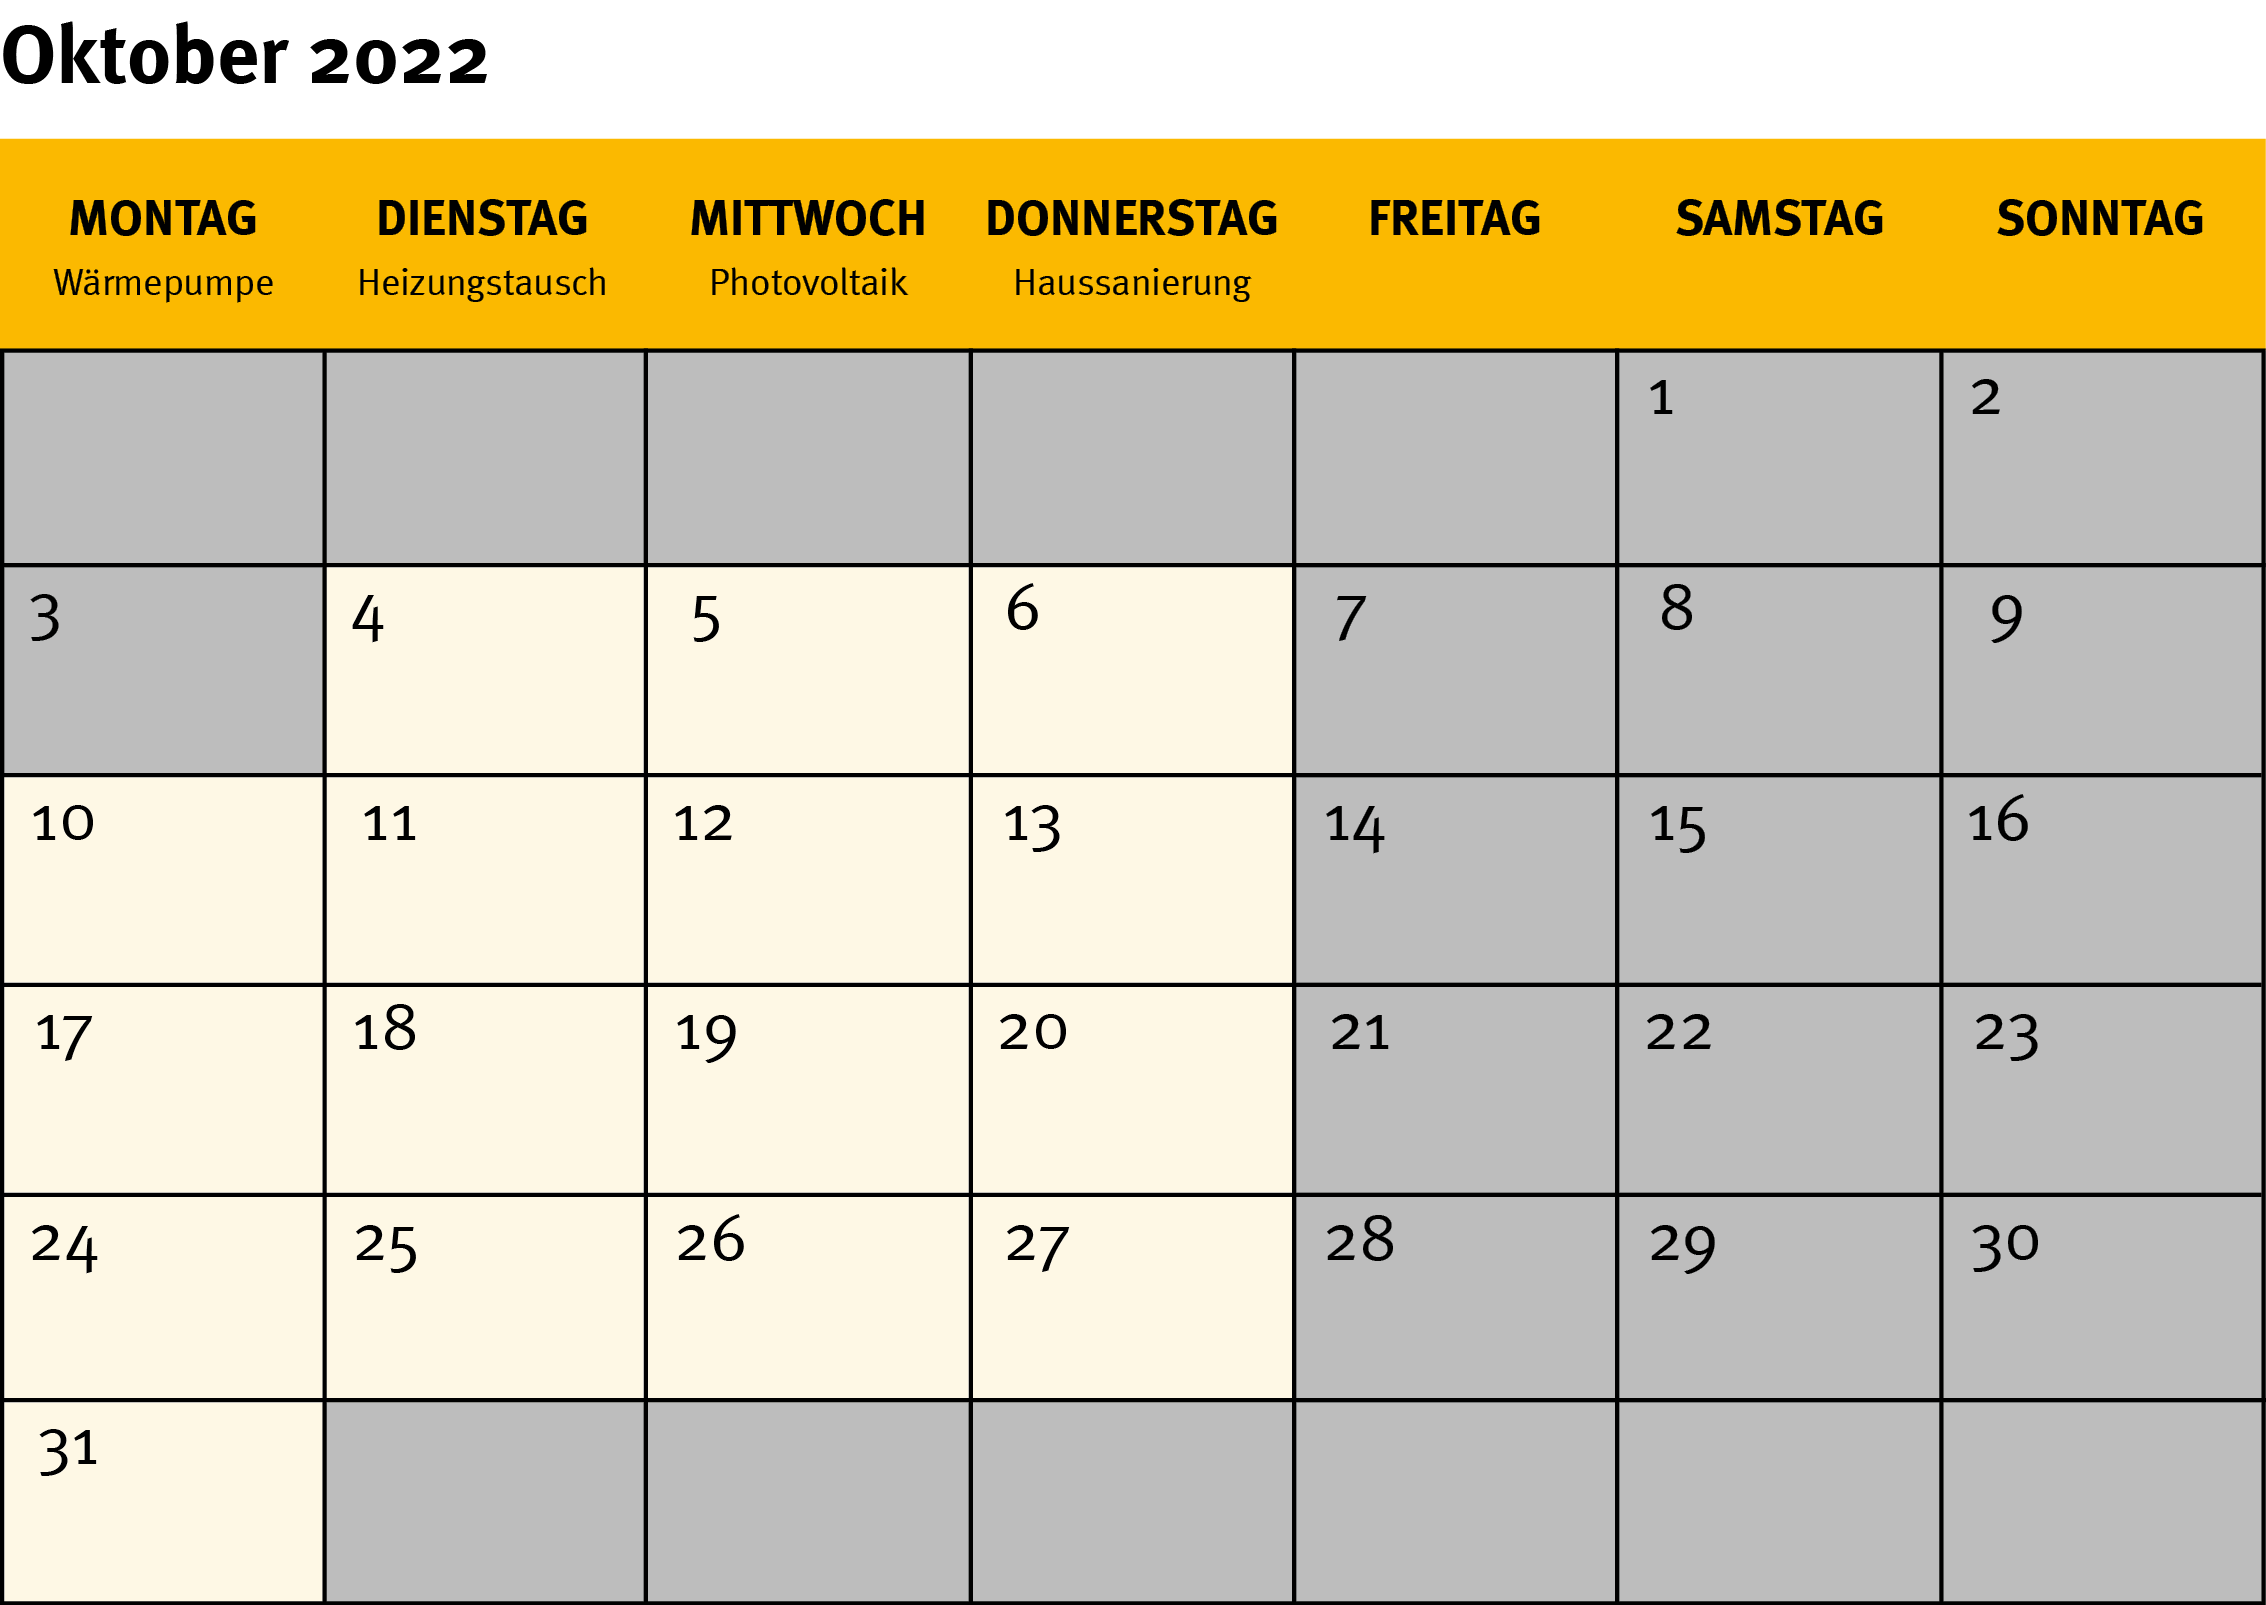 Die Grafik zeigt ein Kalenderblatt für den Monat Oktober 2022.